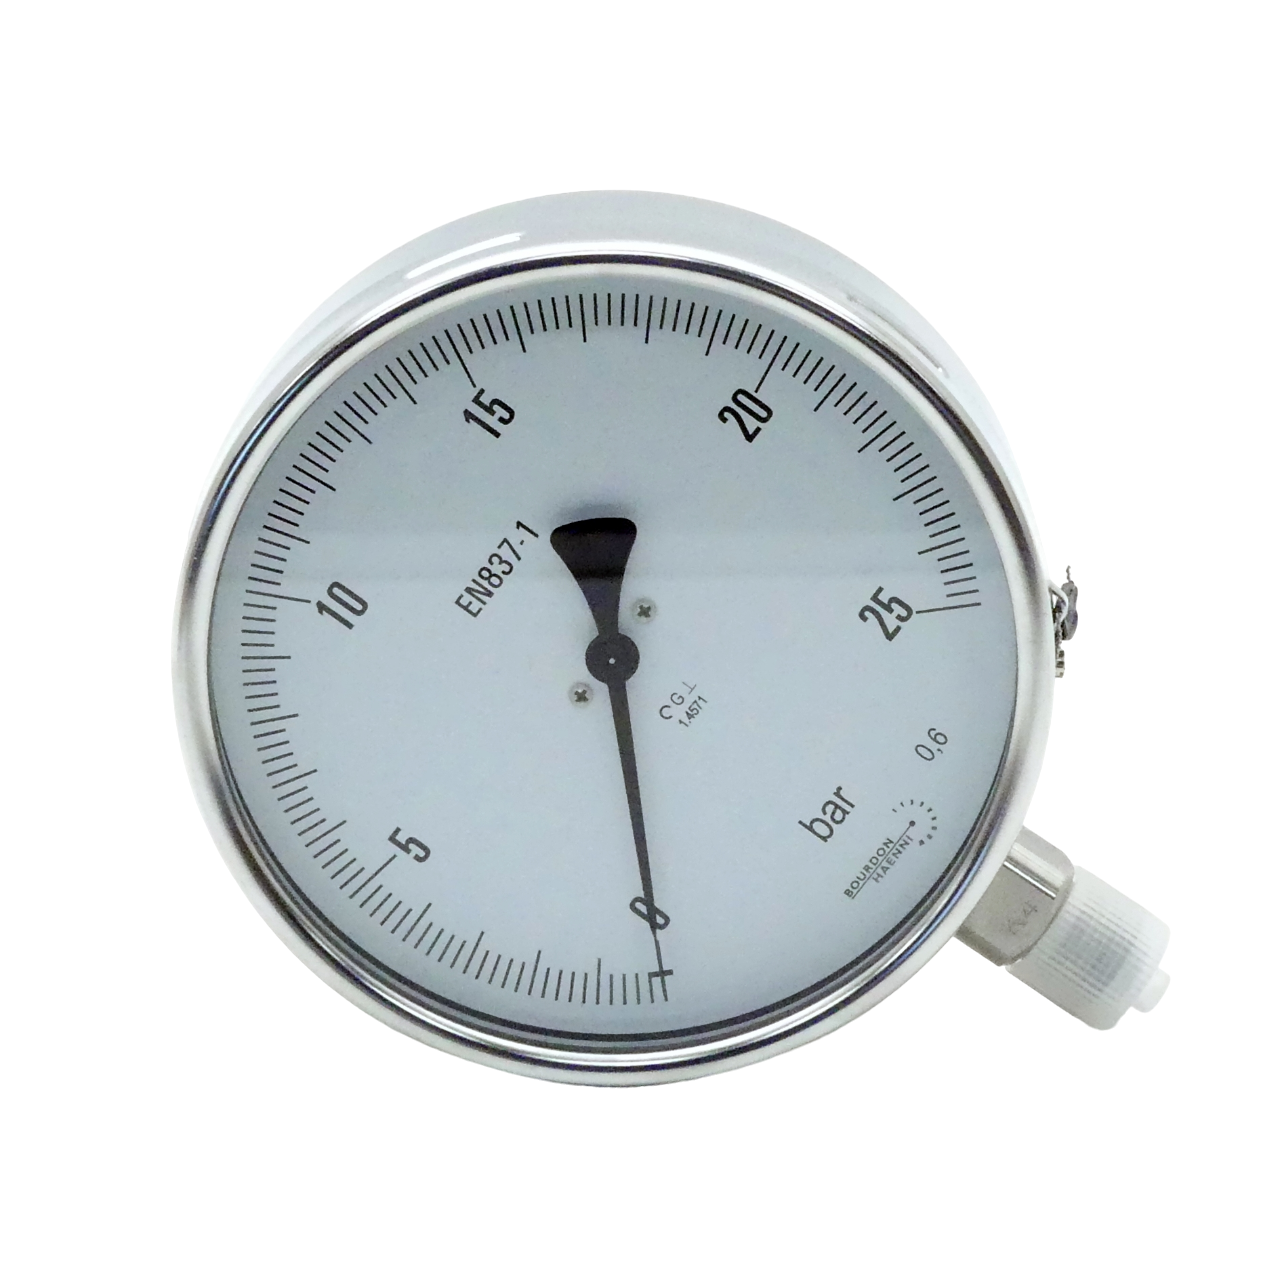 Pressure gauge DRF160/211.133.095 